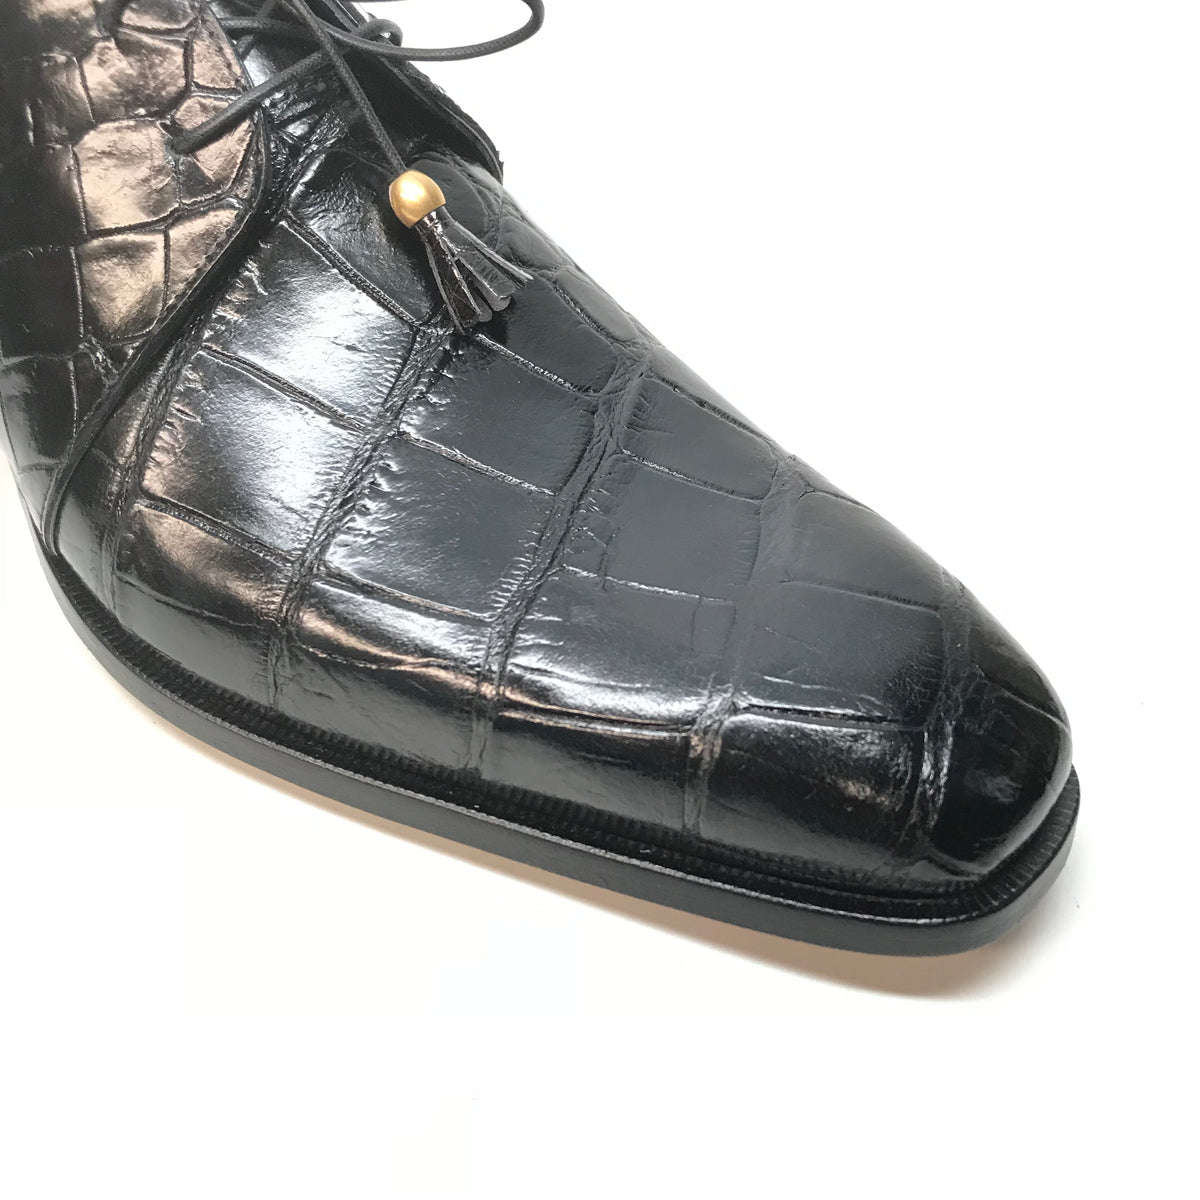 Mauri 4851 Black Alligator Body Lace Up Dress Shoes - Dudes Boutique